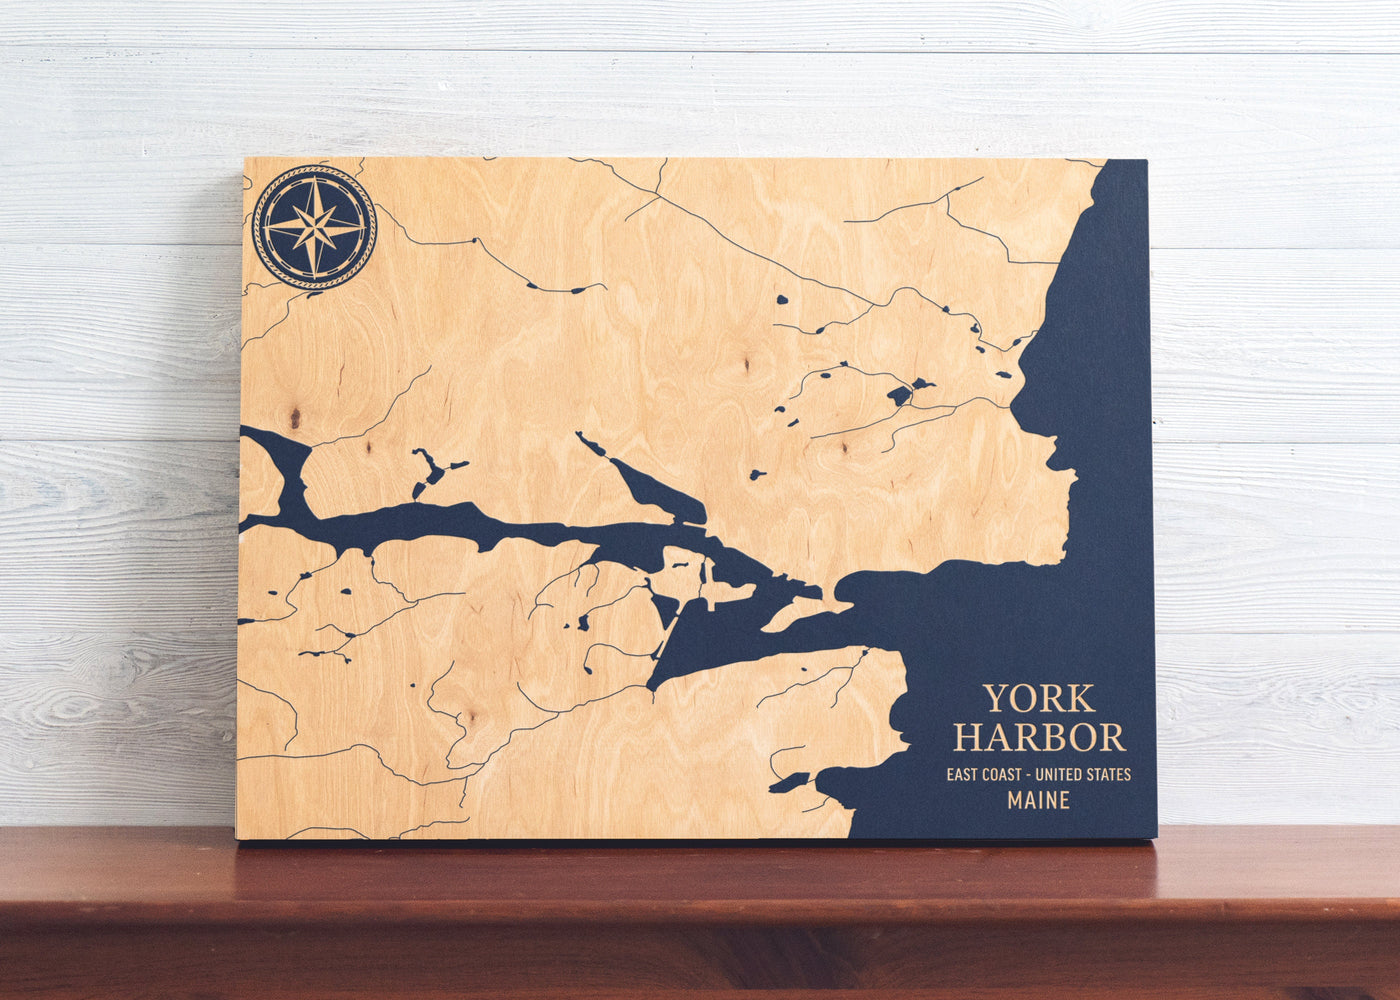 York Harbor, Maine